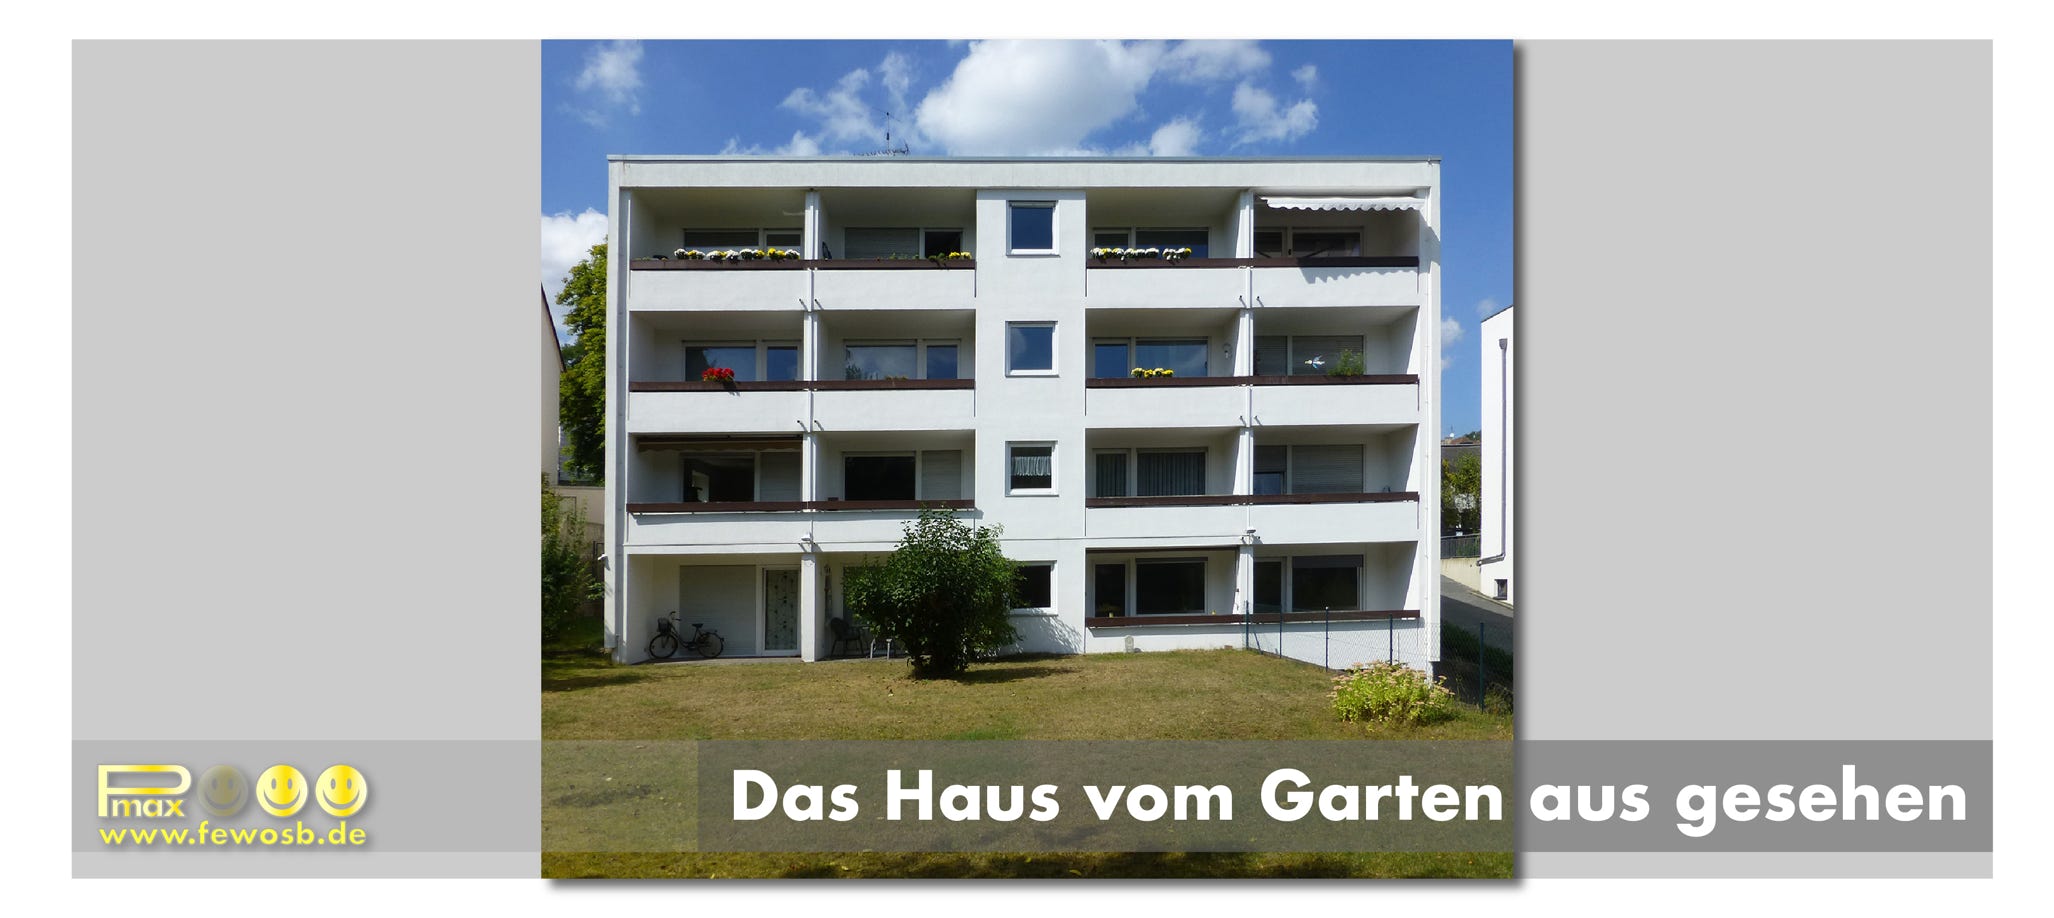 Das Haus liegt im Grünen in einer des besten Lagen von Saarbrücken: Im Stadteil Alt-Saarbrücken. Die Ferienwohnung liegt auf der Rückseite, in Richtung Garten